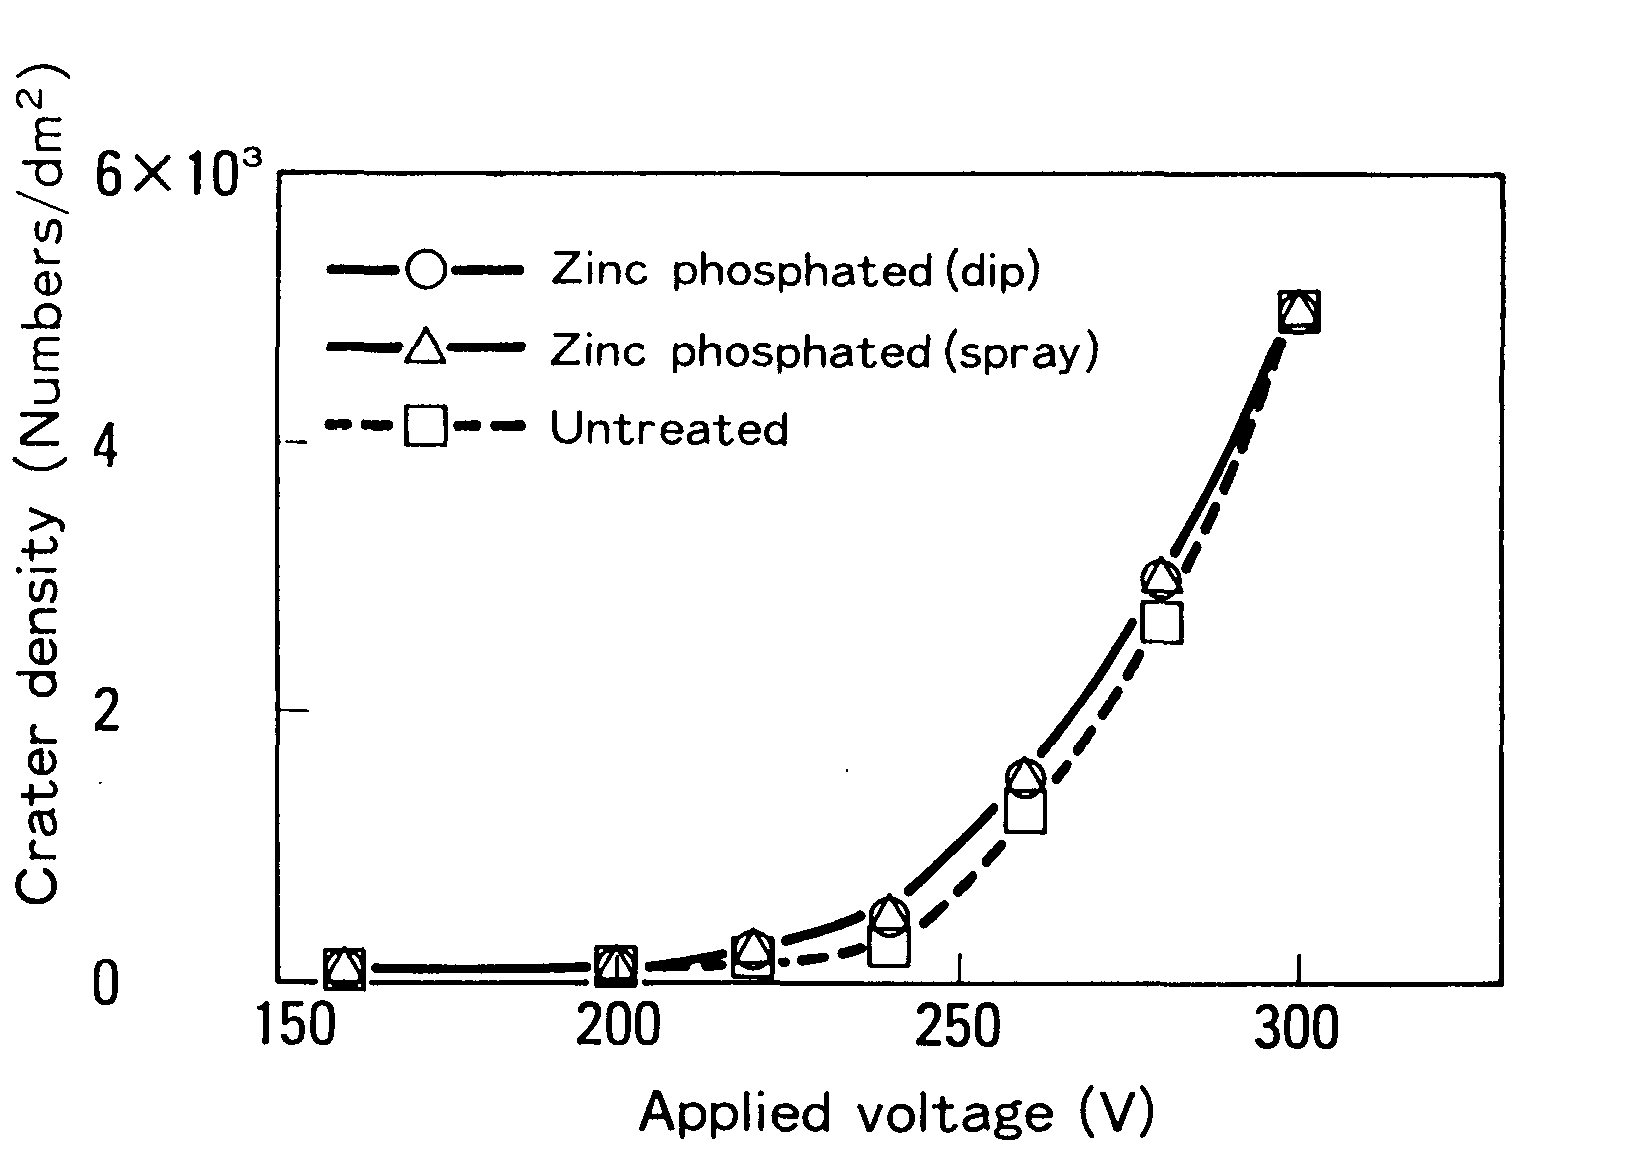 磷酸锌处理对坑密度的影响(钢板:GA、环氧漆)。